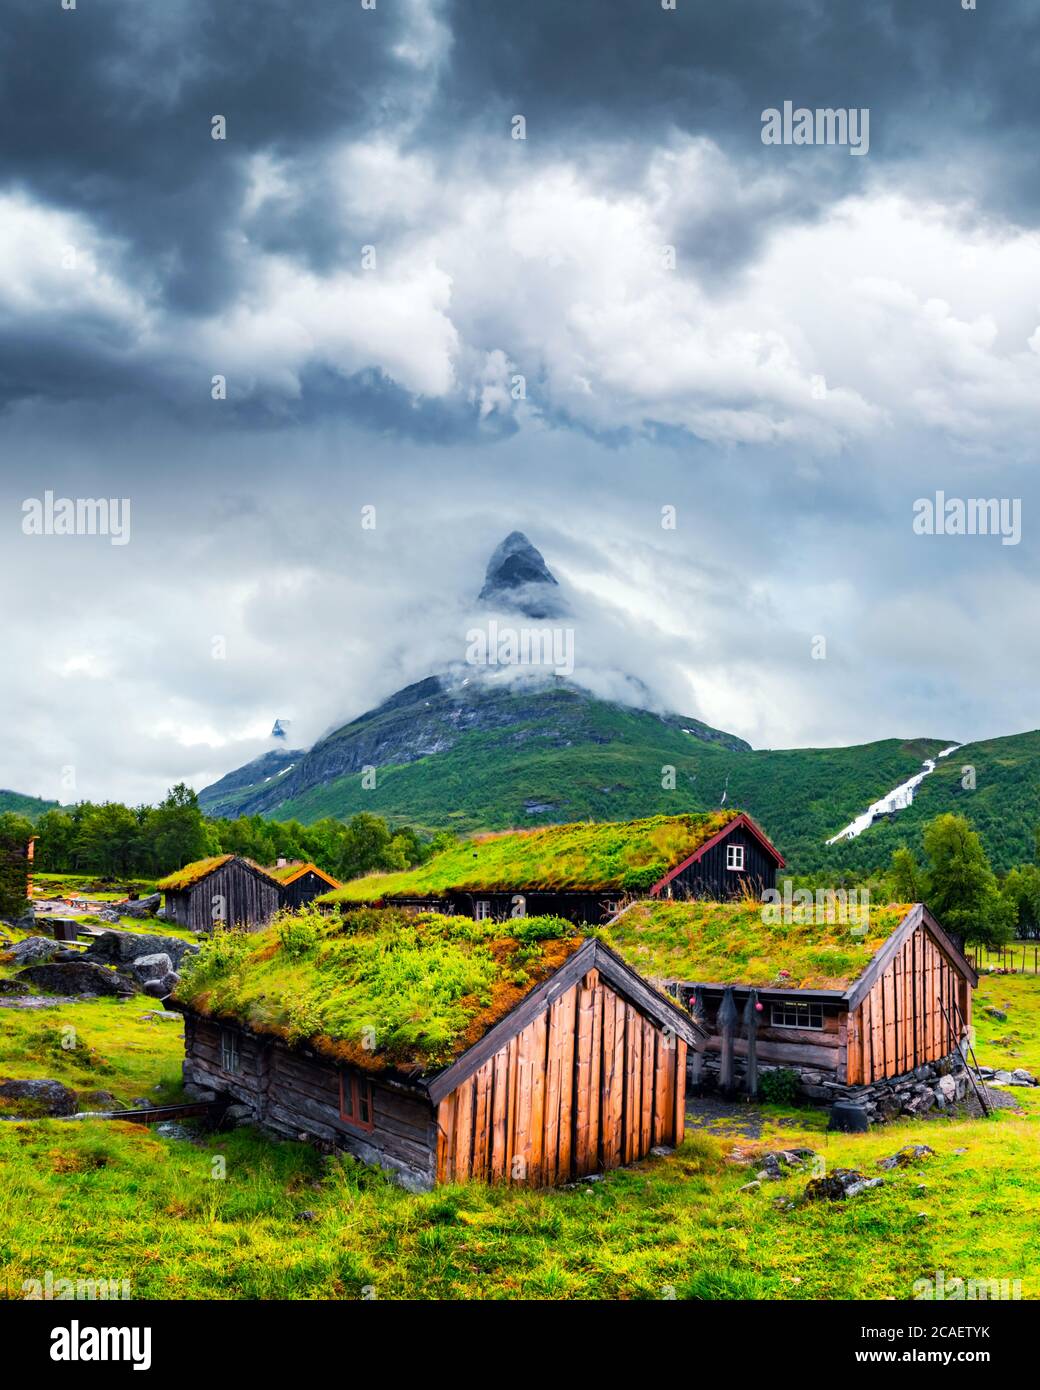 Tipiche vecchie case norvegesi in legno con tetti in erba a Innerdalen - la più bella valle di montagna della Norvegia, vicino al lago Innerdalsvatna. Norvegia, Europa. Fotografia di paesaggio Foto Stock